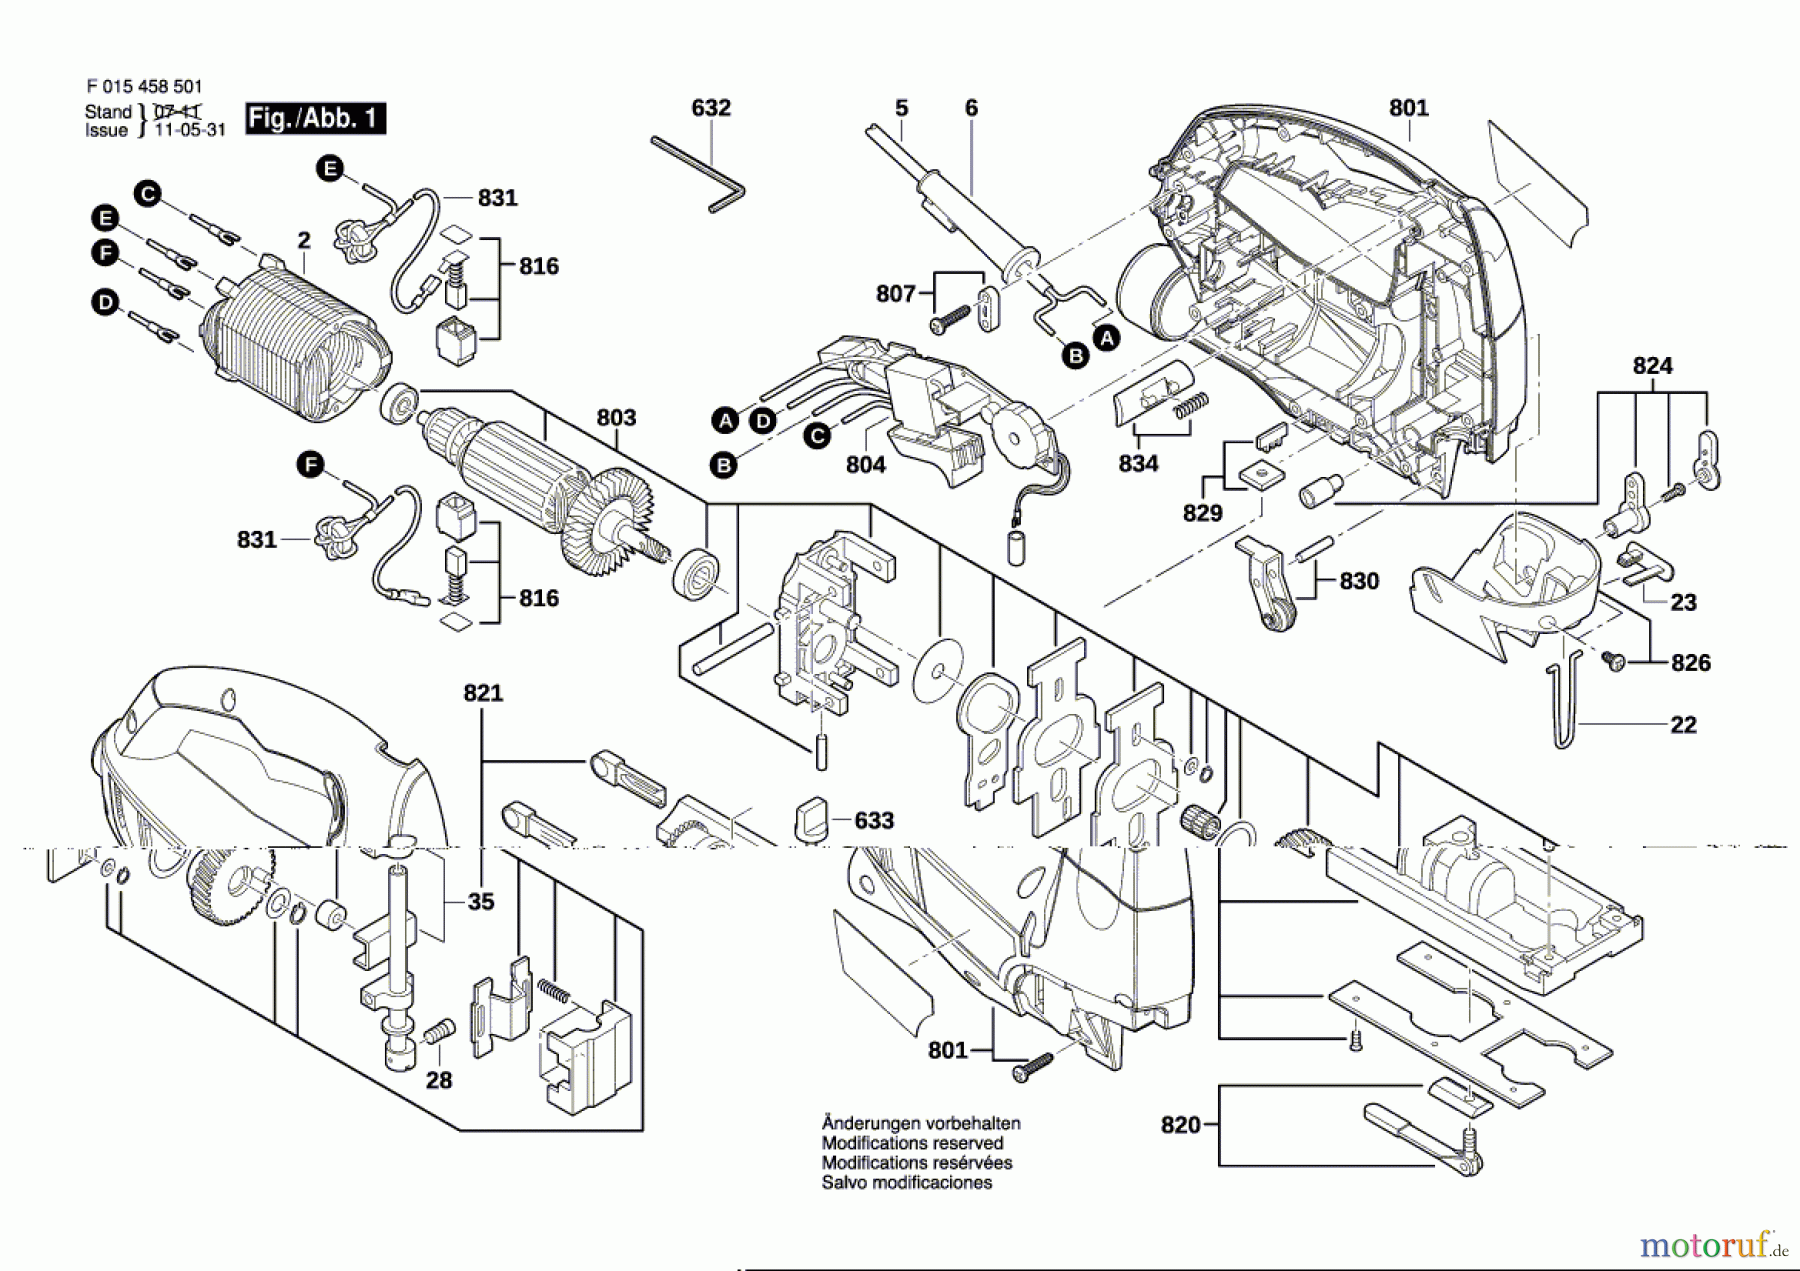  Bosch Werkzeug Stichsäge 4585 Seite 1